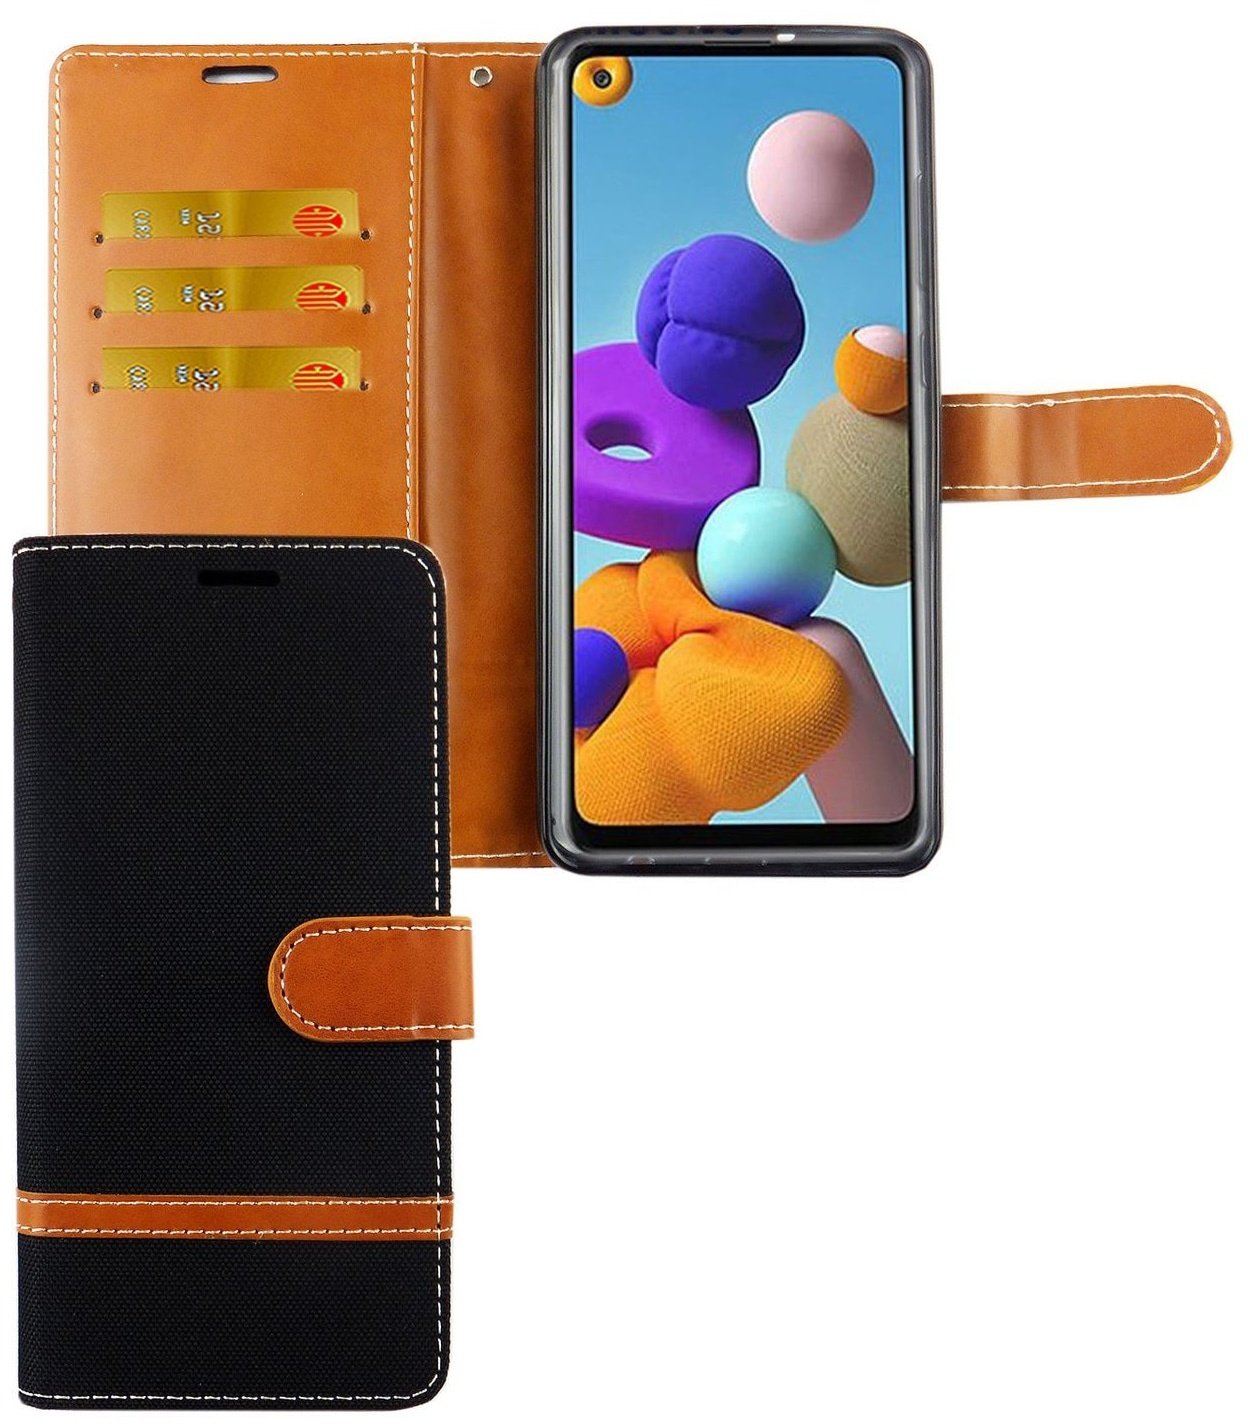 Hülle Handy Schutz für Samsung Galaxy A21s Case Cover Tasche Wallet Etui Bumper